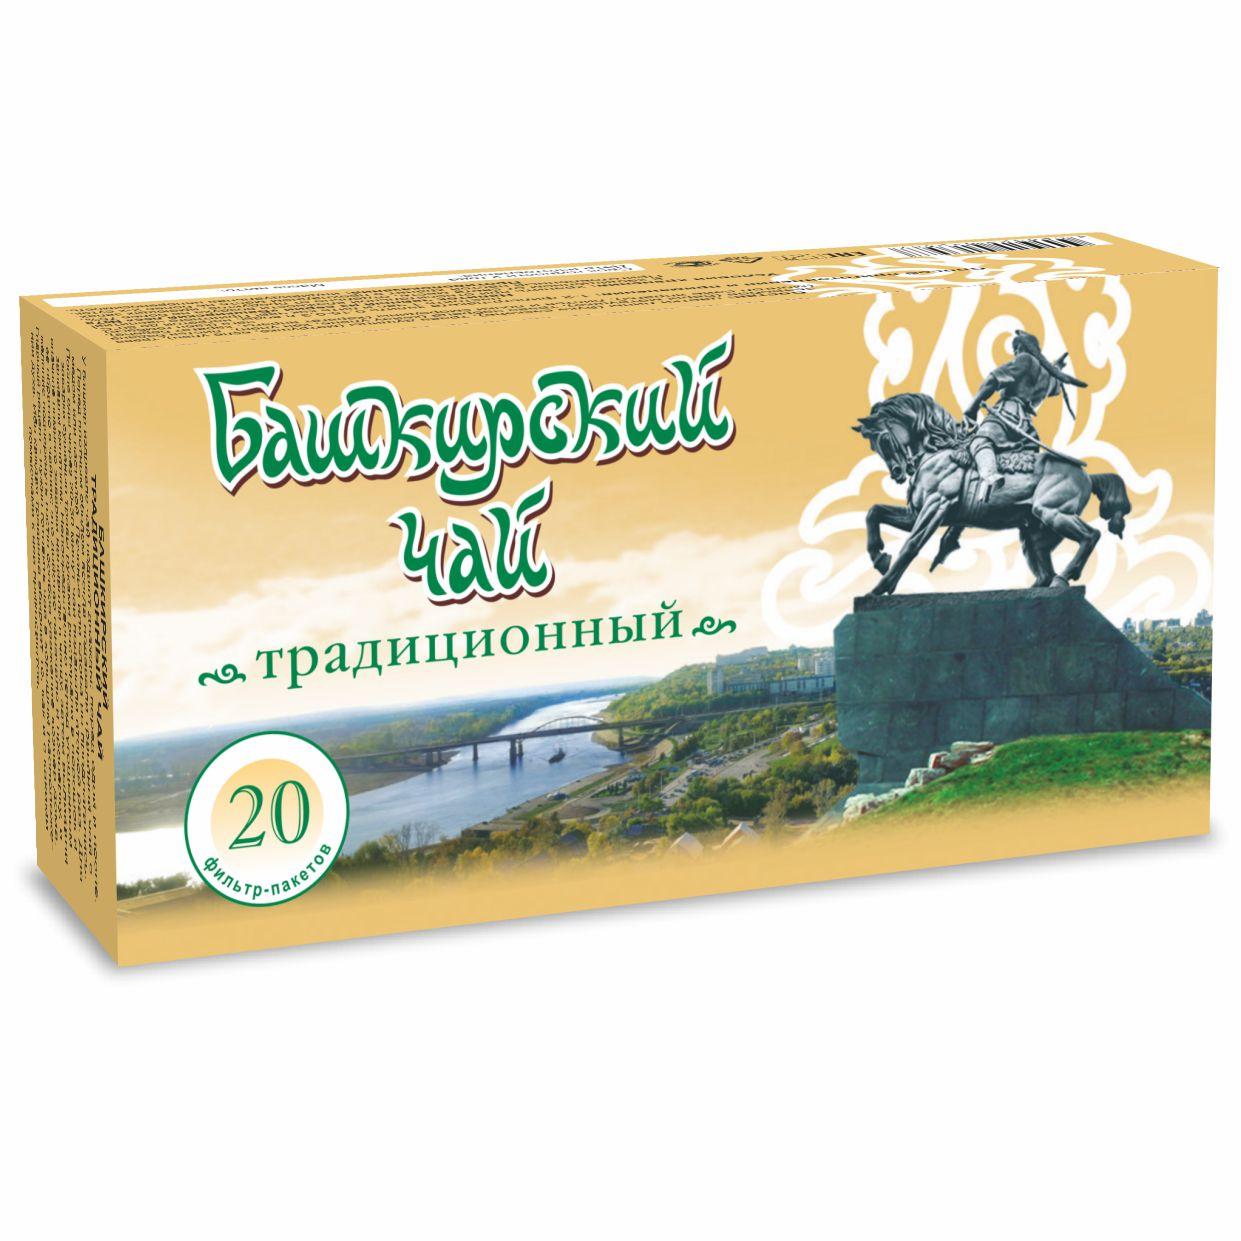 Башкирский традиционный чай, ф/п, 20шт